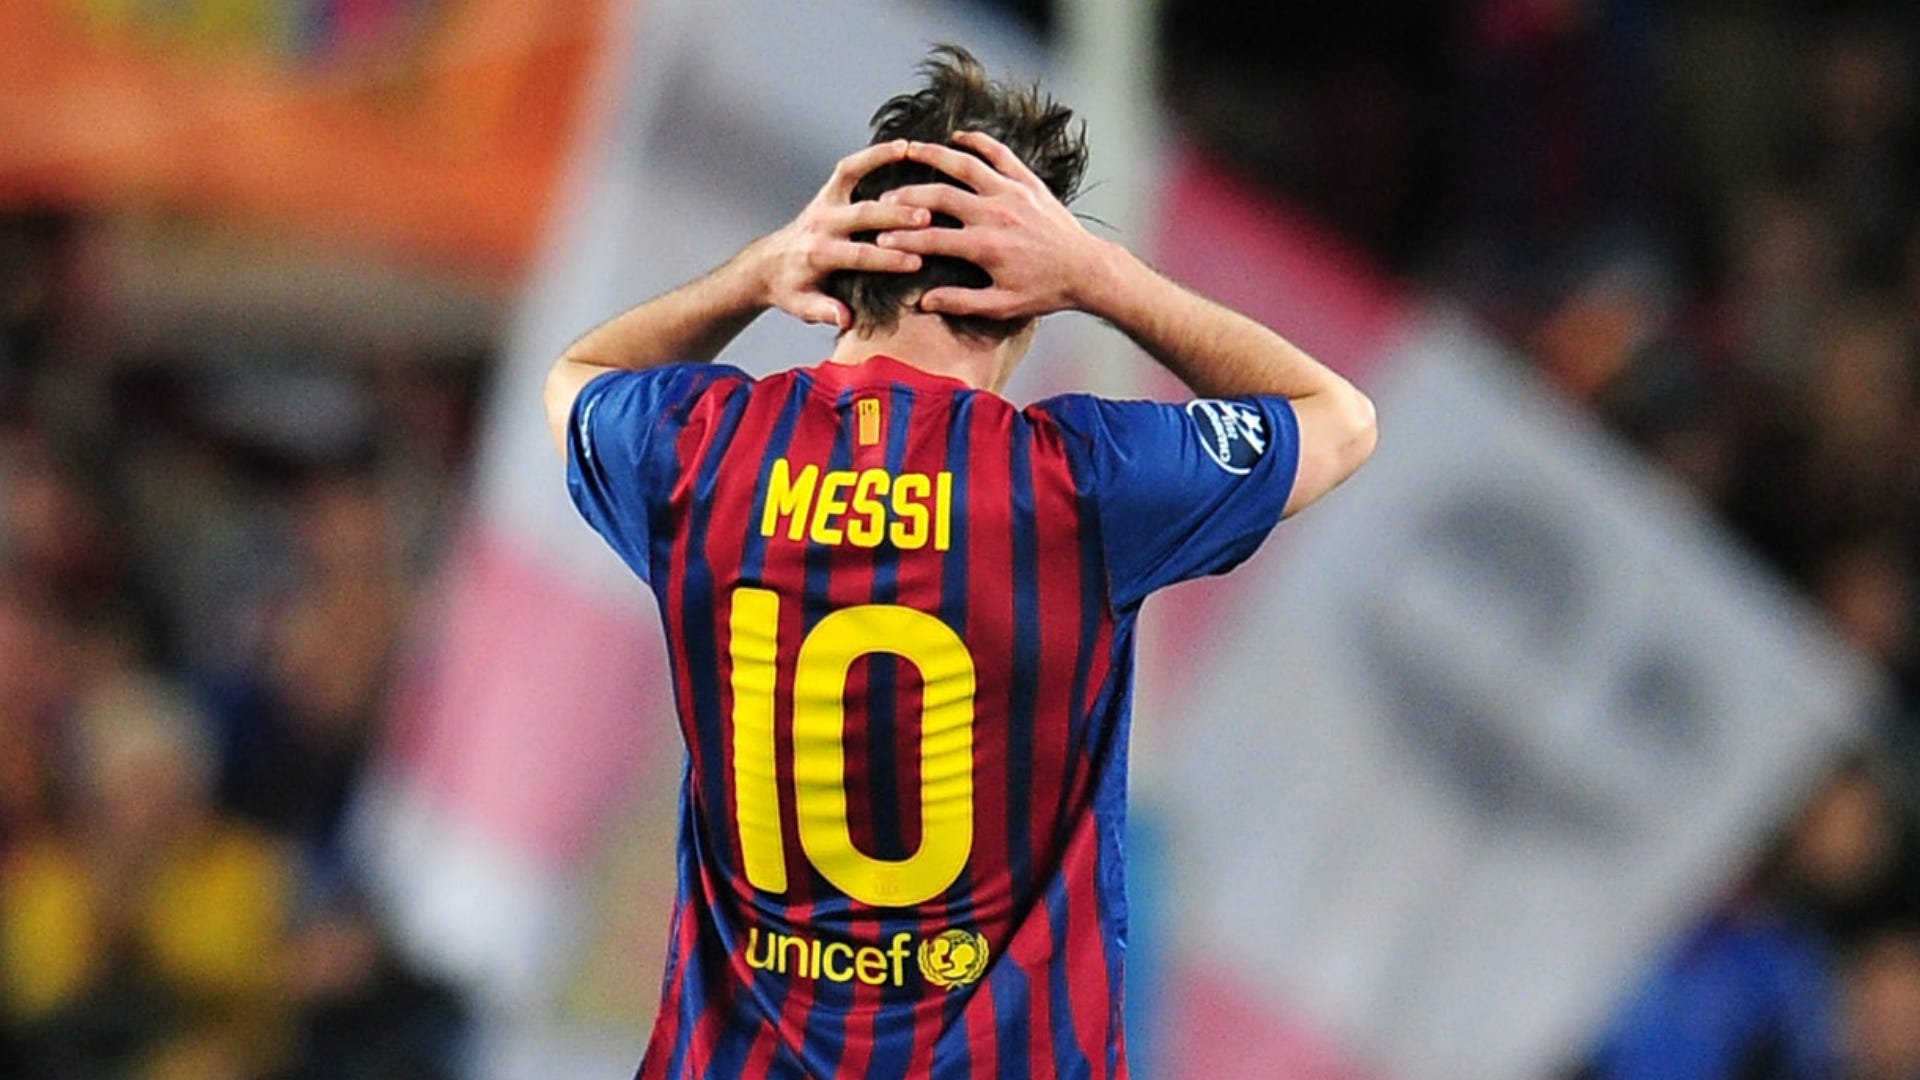 Sự nghiệp bóng đá của Messi đang trong cơn bão gió lớn khi anh khóc trên sân. Hãy xem hình ảnh này để hiểu rõ hơn về tâm trạng và cố gắng của ngôi sao này trong các trận đấu quan trọng.